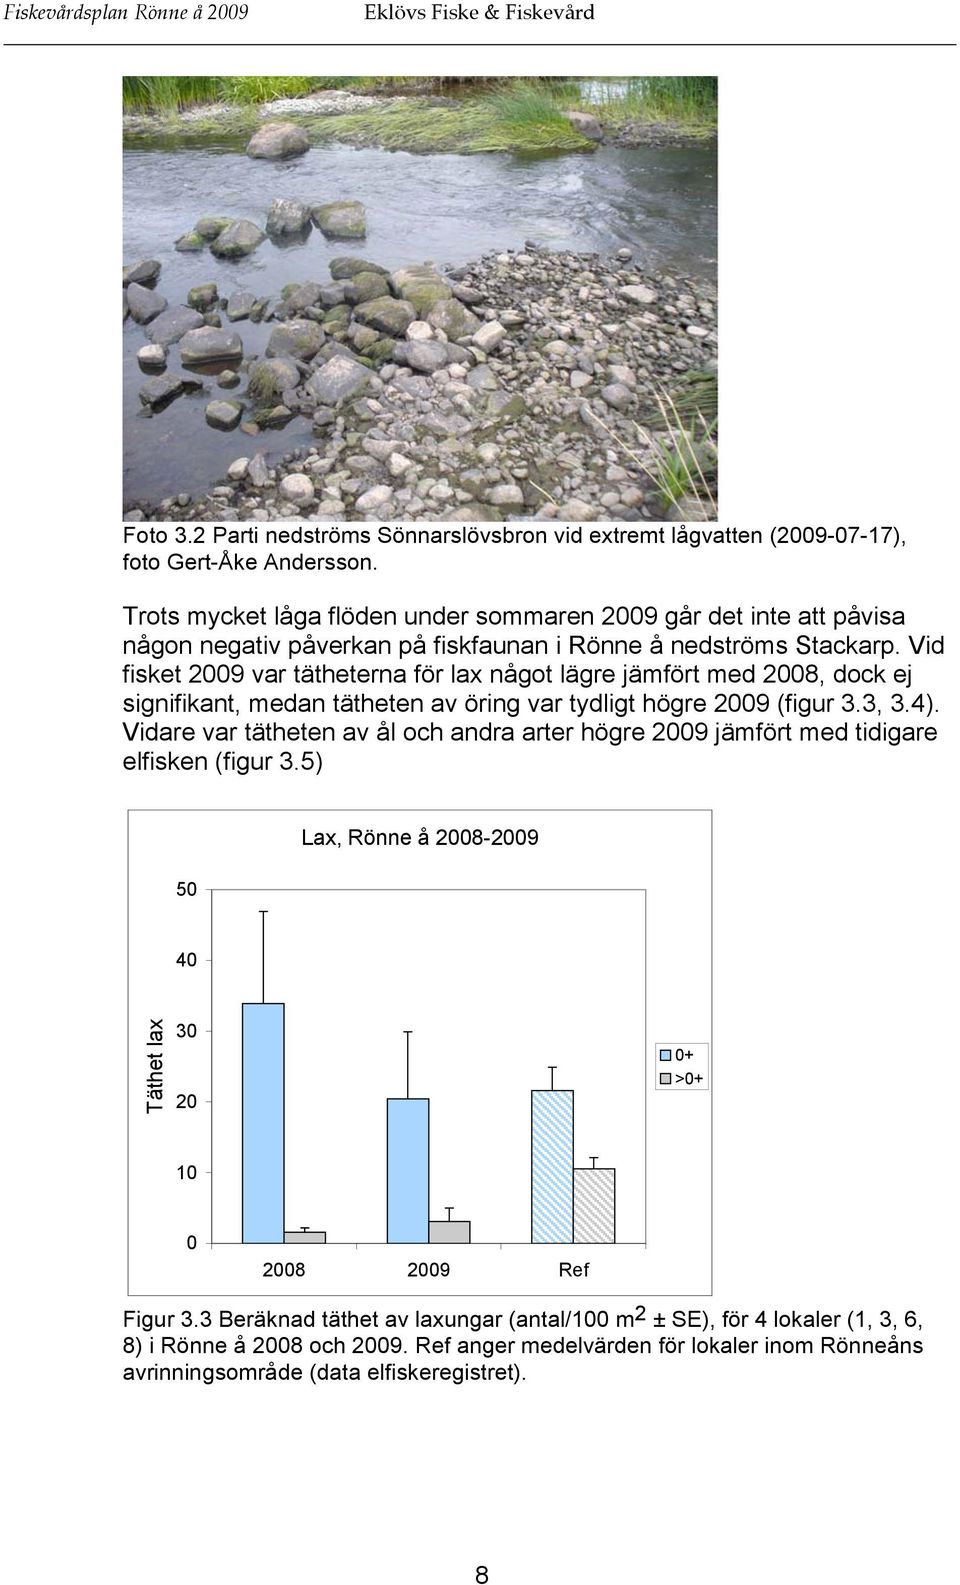 Vid fisket 2009 var tätheterna för lax något lägre jämfört med 2008, dock ej signifikant, medan tätheten av öring var tydligt högre 2009 (figur 3.3, 3.4).